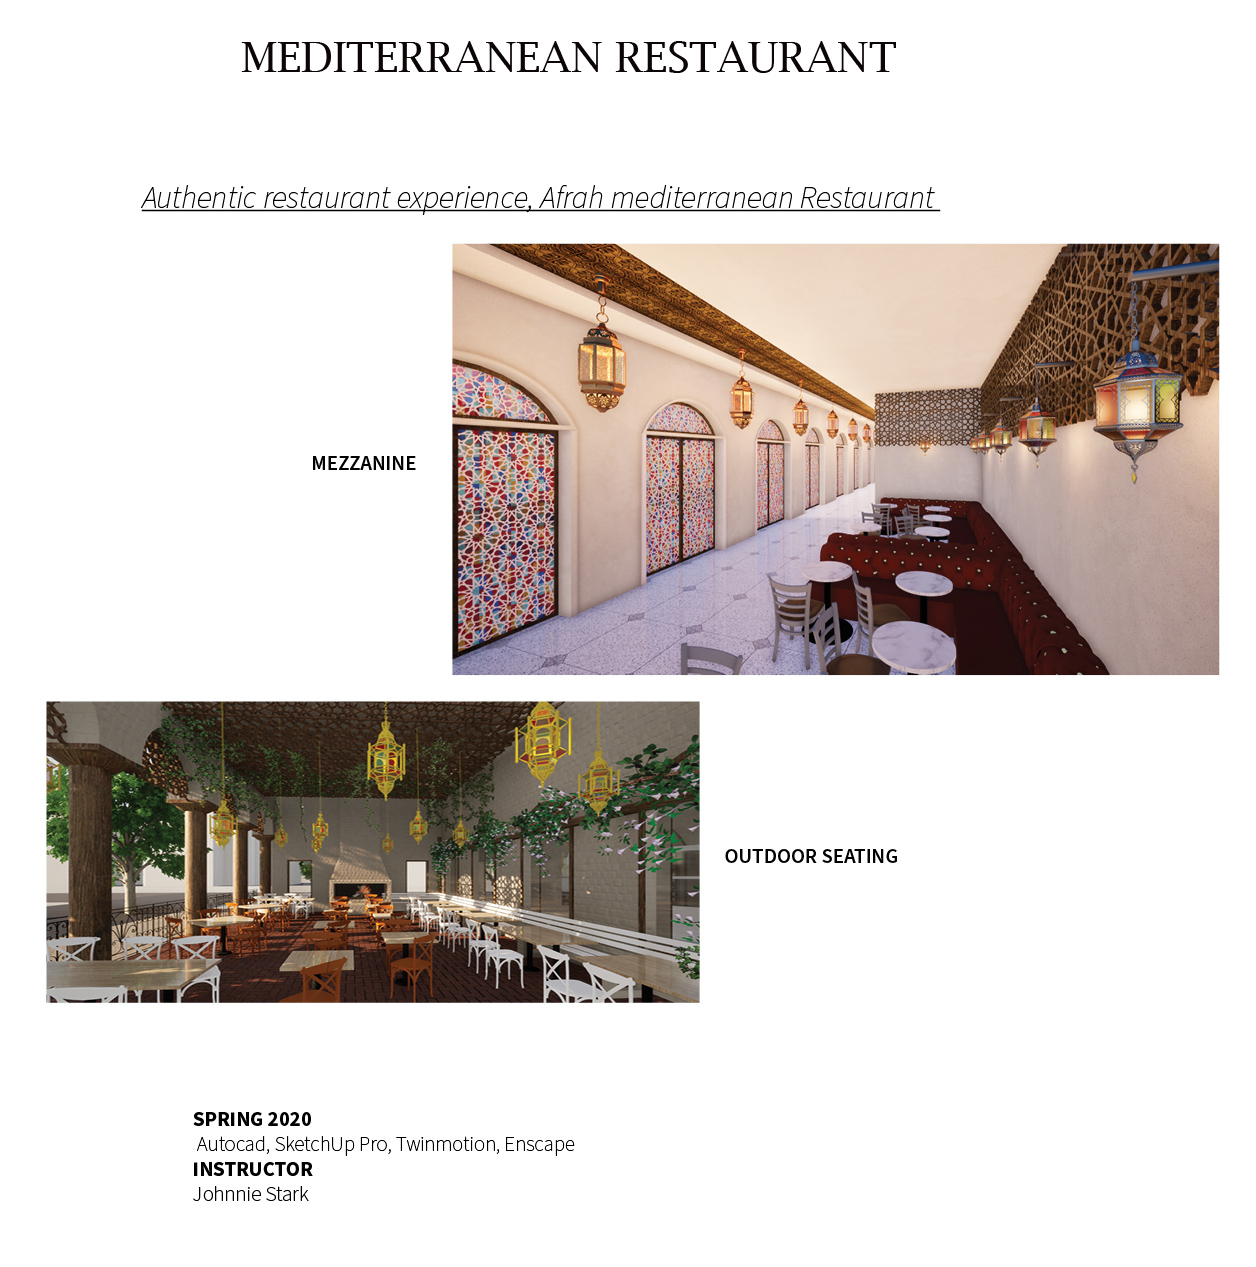 Mediterranean restaurant - Mezzanine and outdoor seating designs